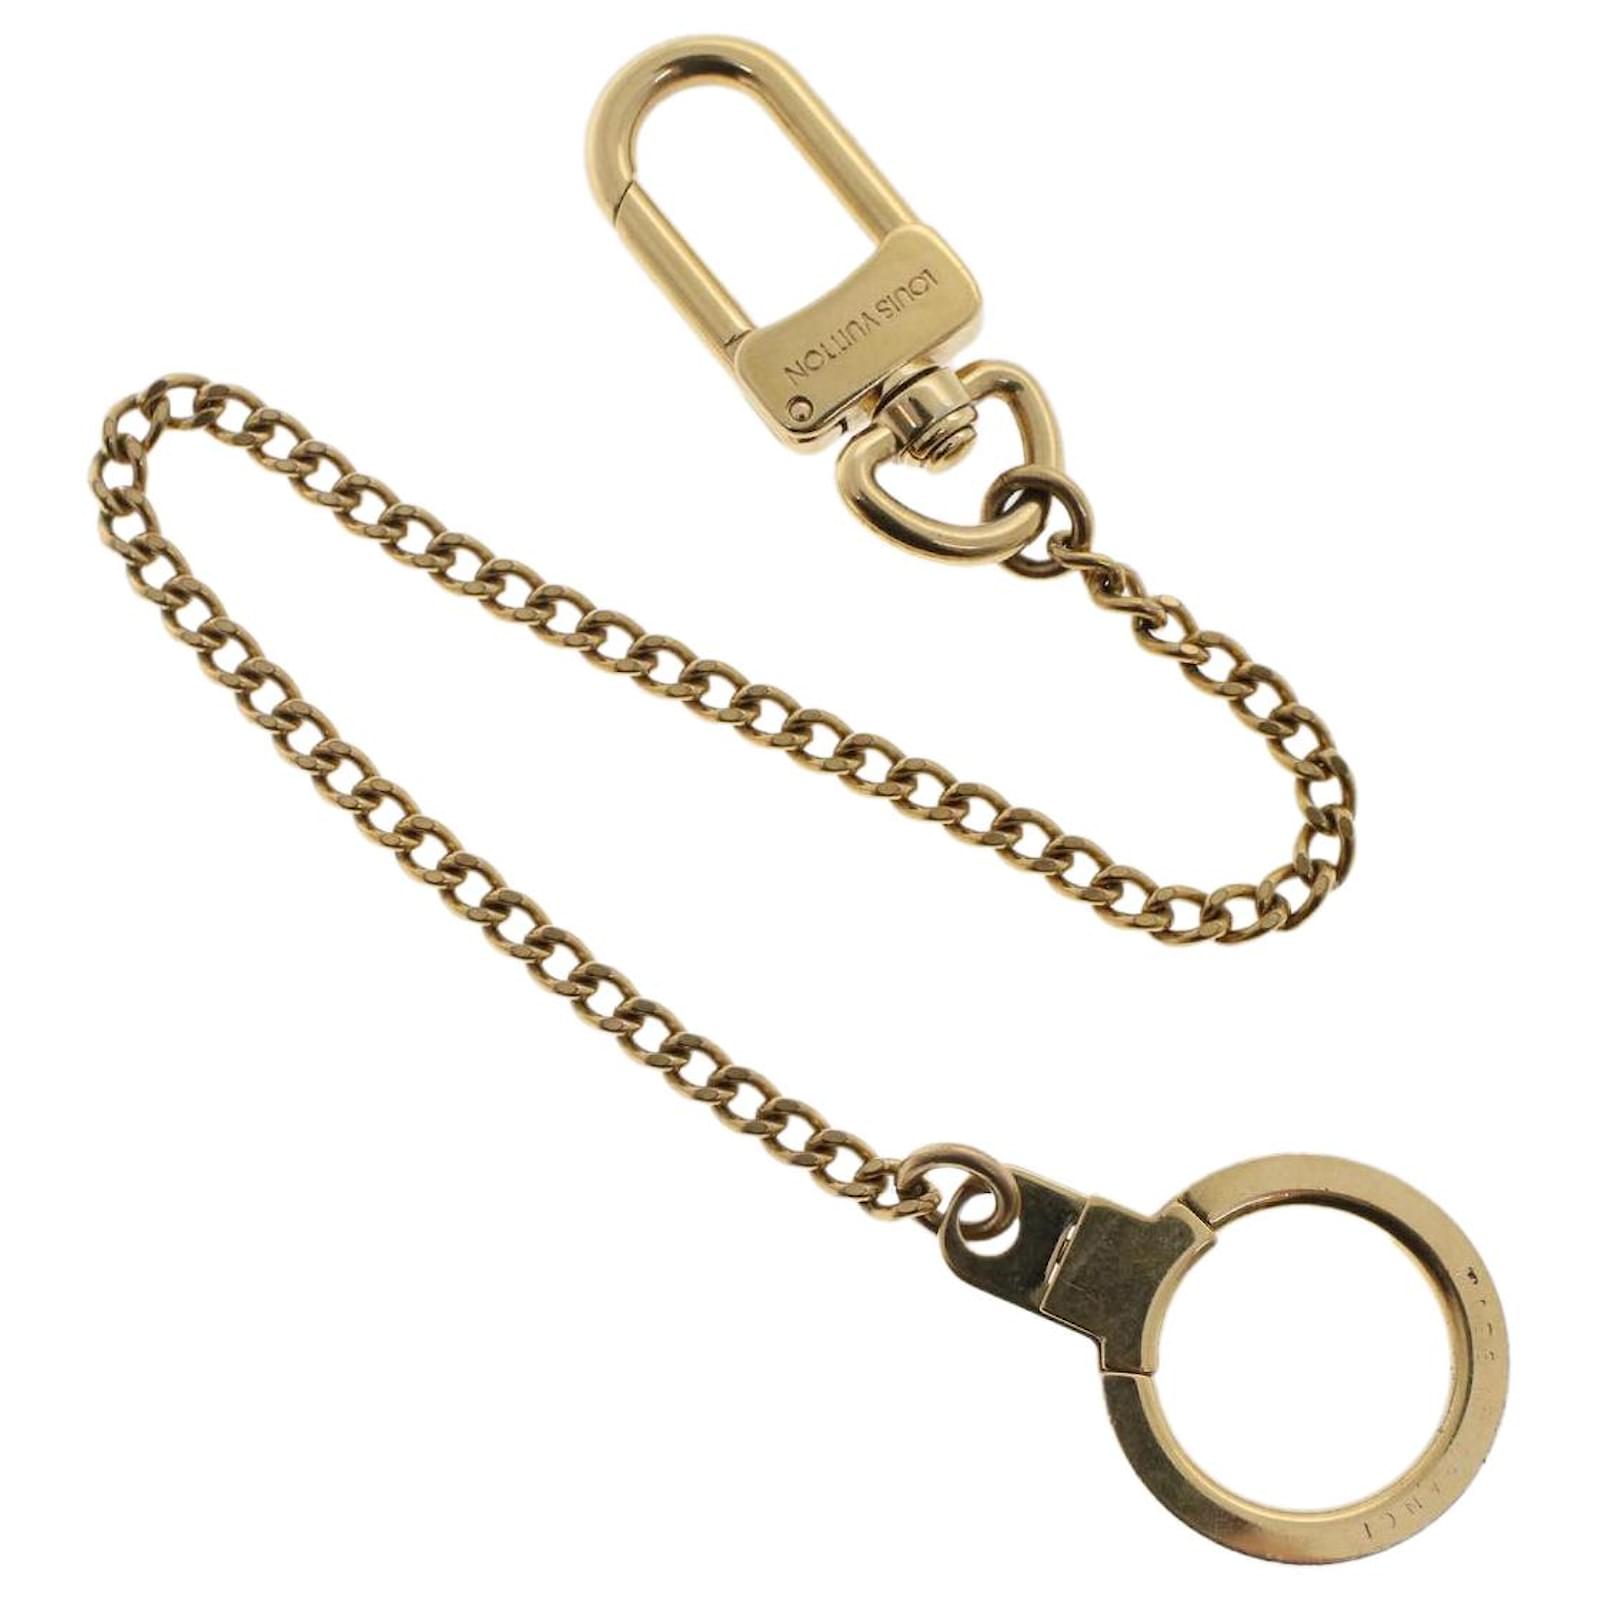 LOUIS VUITTON Chainne Anneau Cles Key Ring Gold Tone M58021 LV